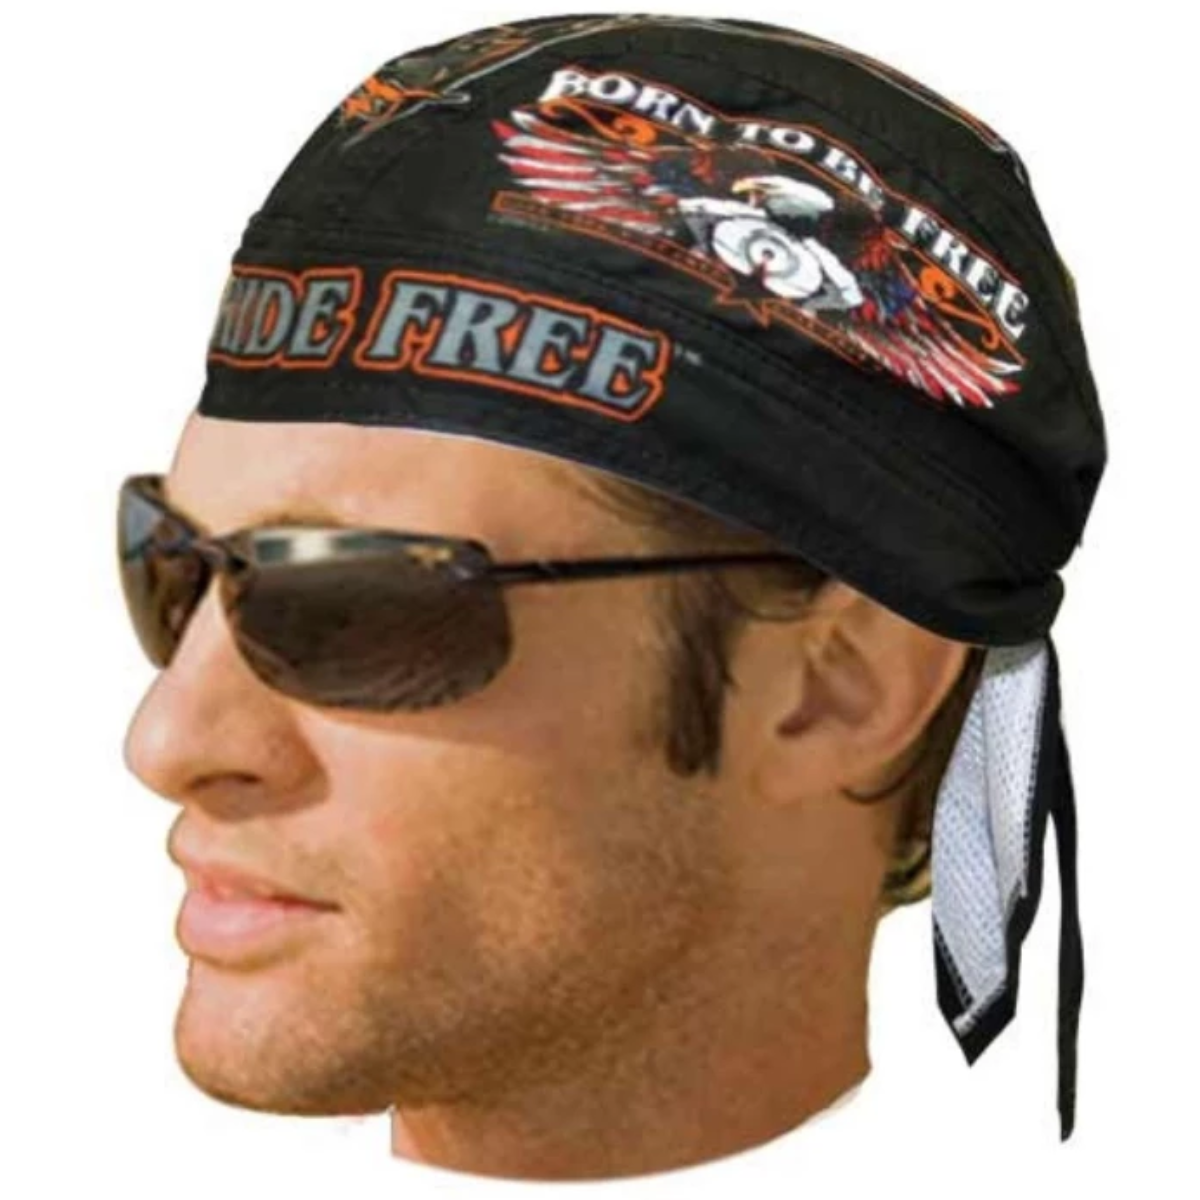 Daniel Smart "Born to be Free" Headwrap - American Legend Rider